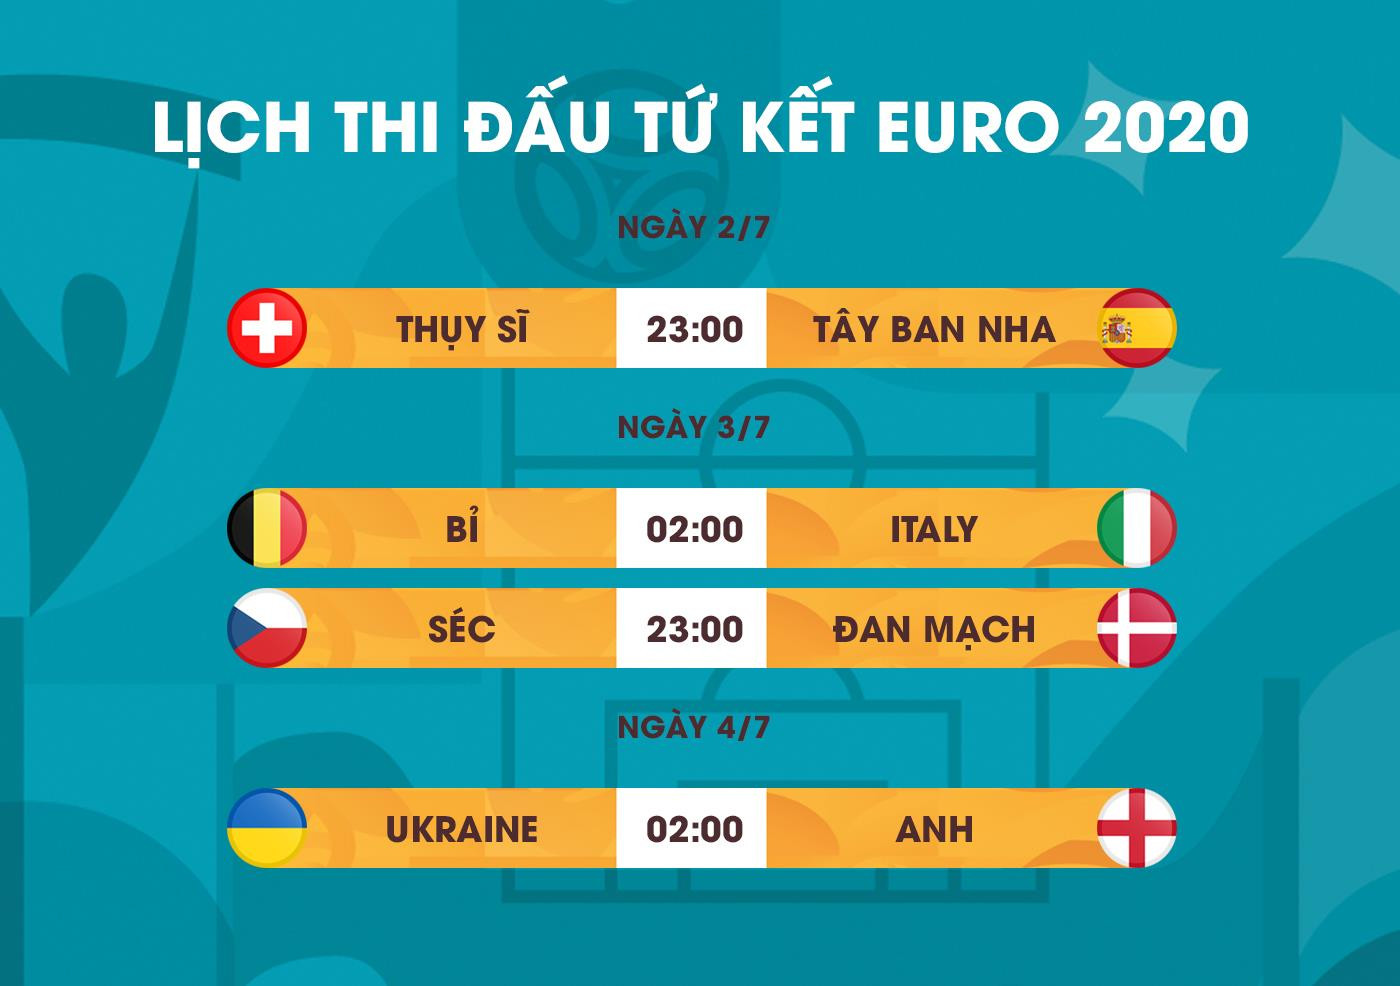 Lịch thi đấu tứ kết EURO 2020 mới nhất - 1